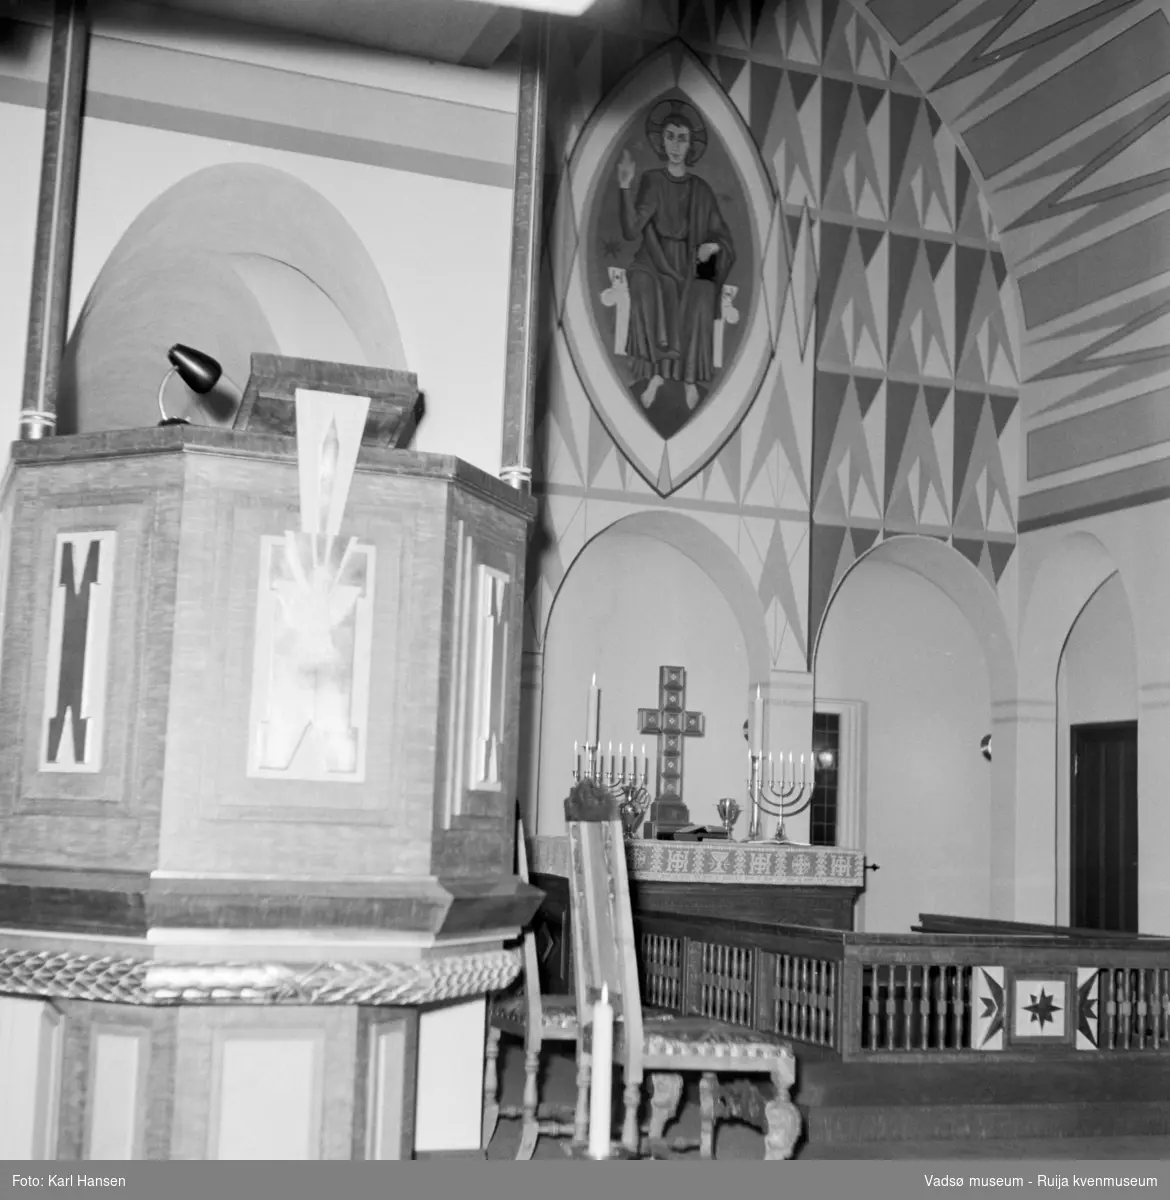 Vadsø kirke 1.10.1958. Kirka ble vigslet i 1958. Arkitekt: Magnus Poulsson, utsmykking av Greta Thiis.